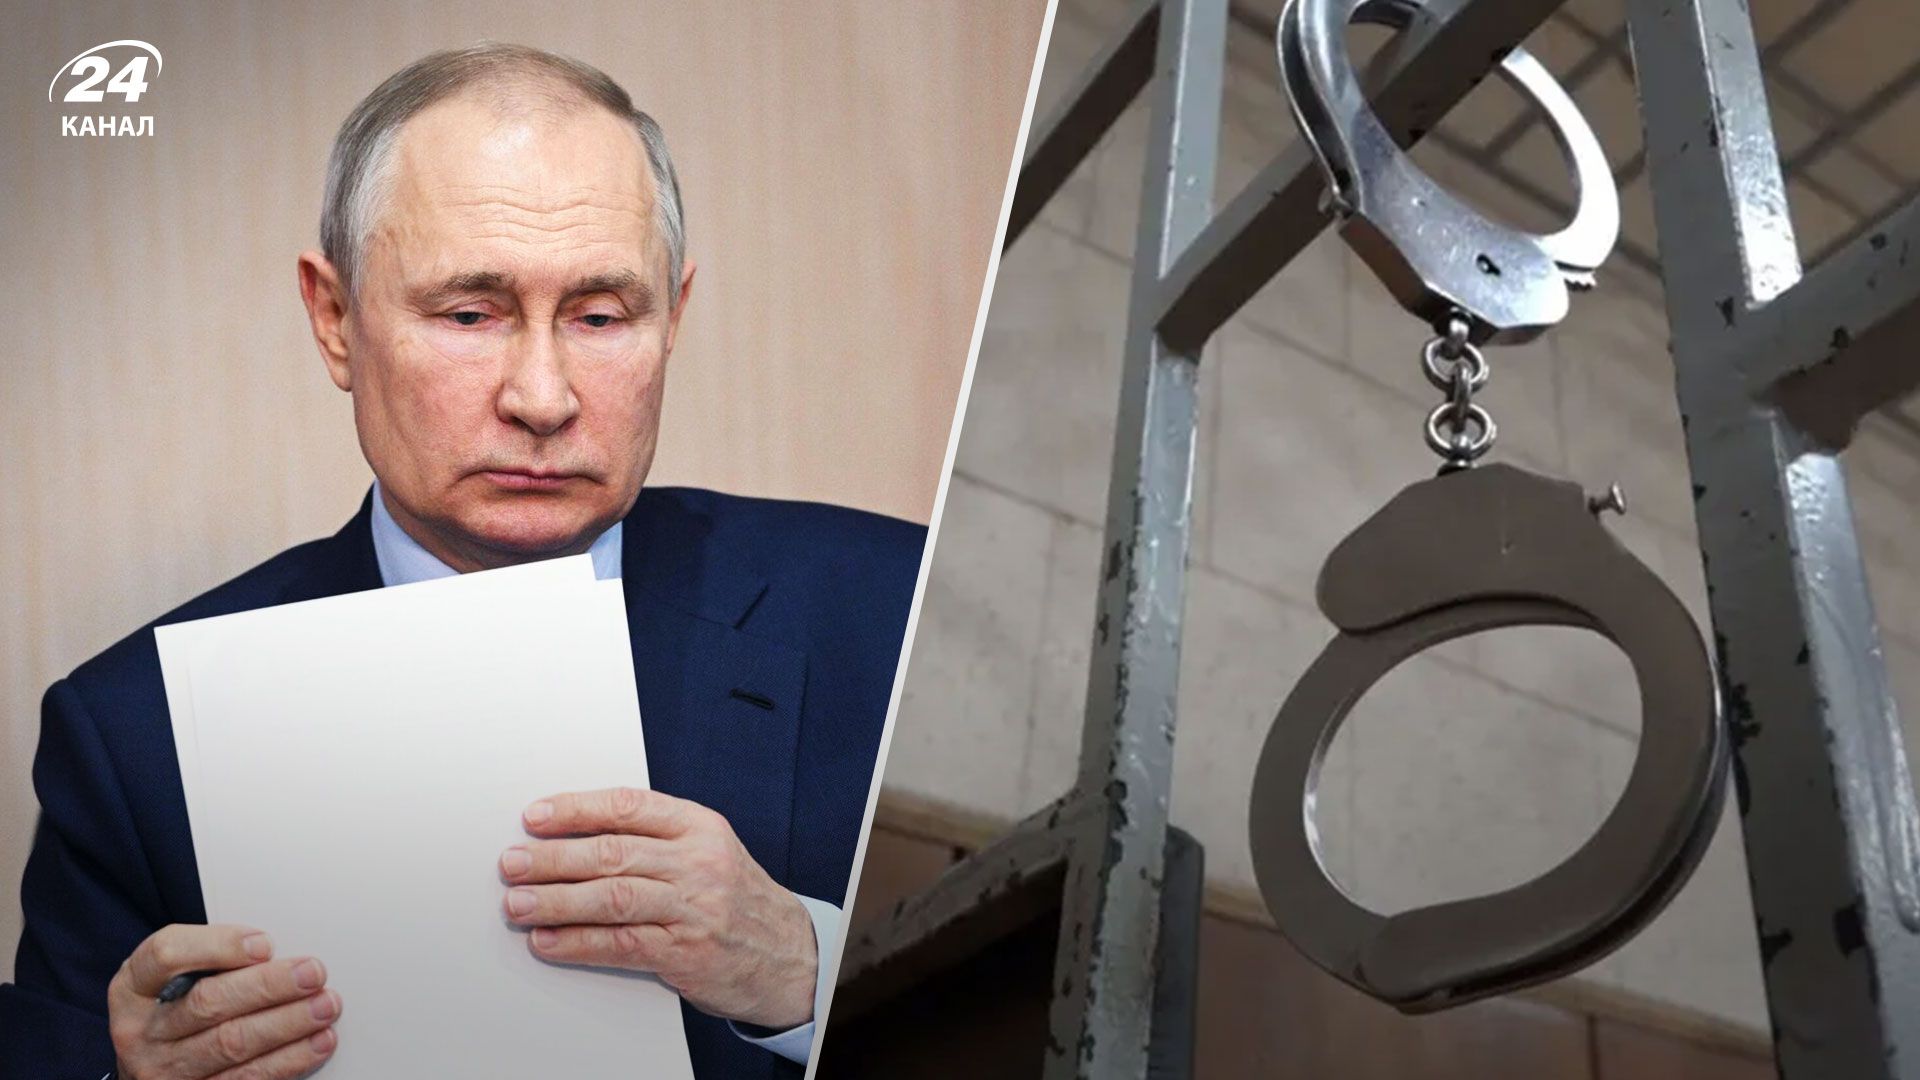 Путин Гаага – какова была реакция Кремля на ордер на арест для диктатора - 24 Канал